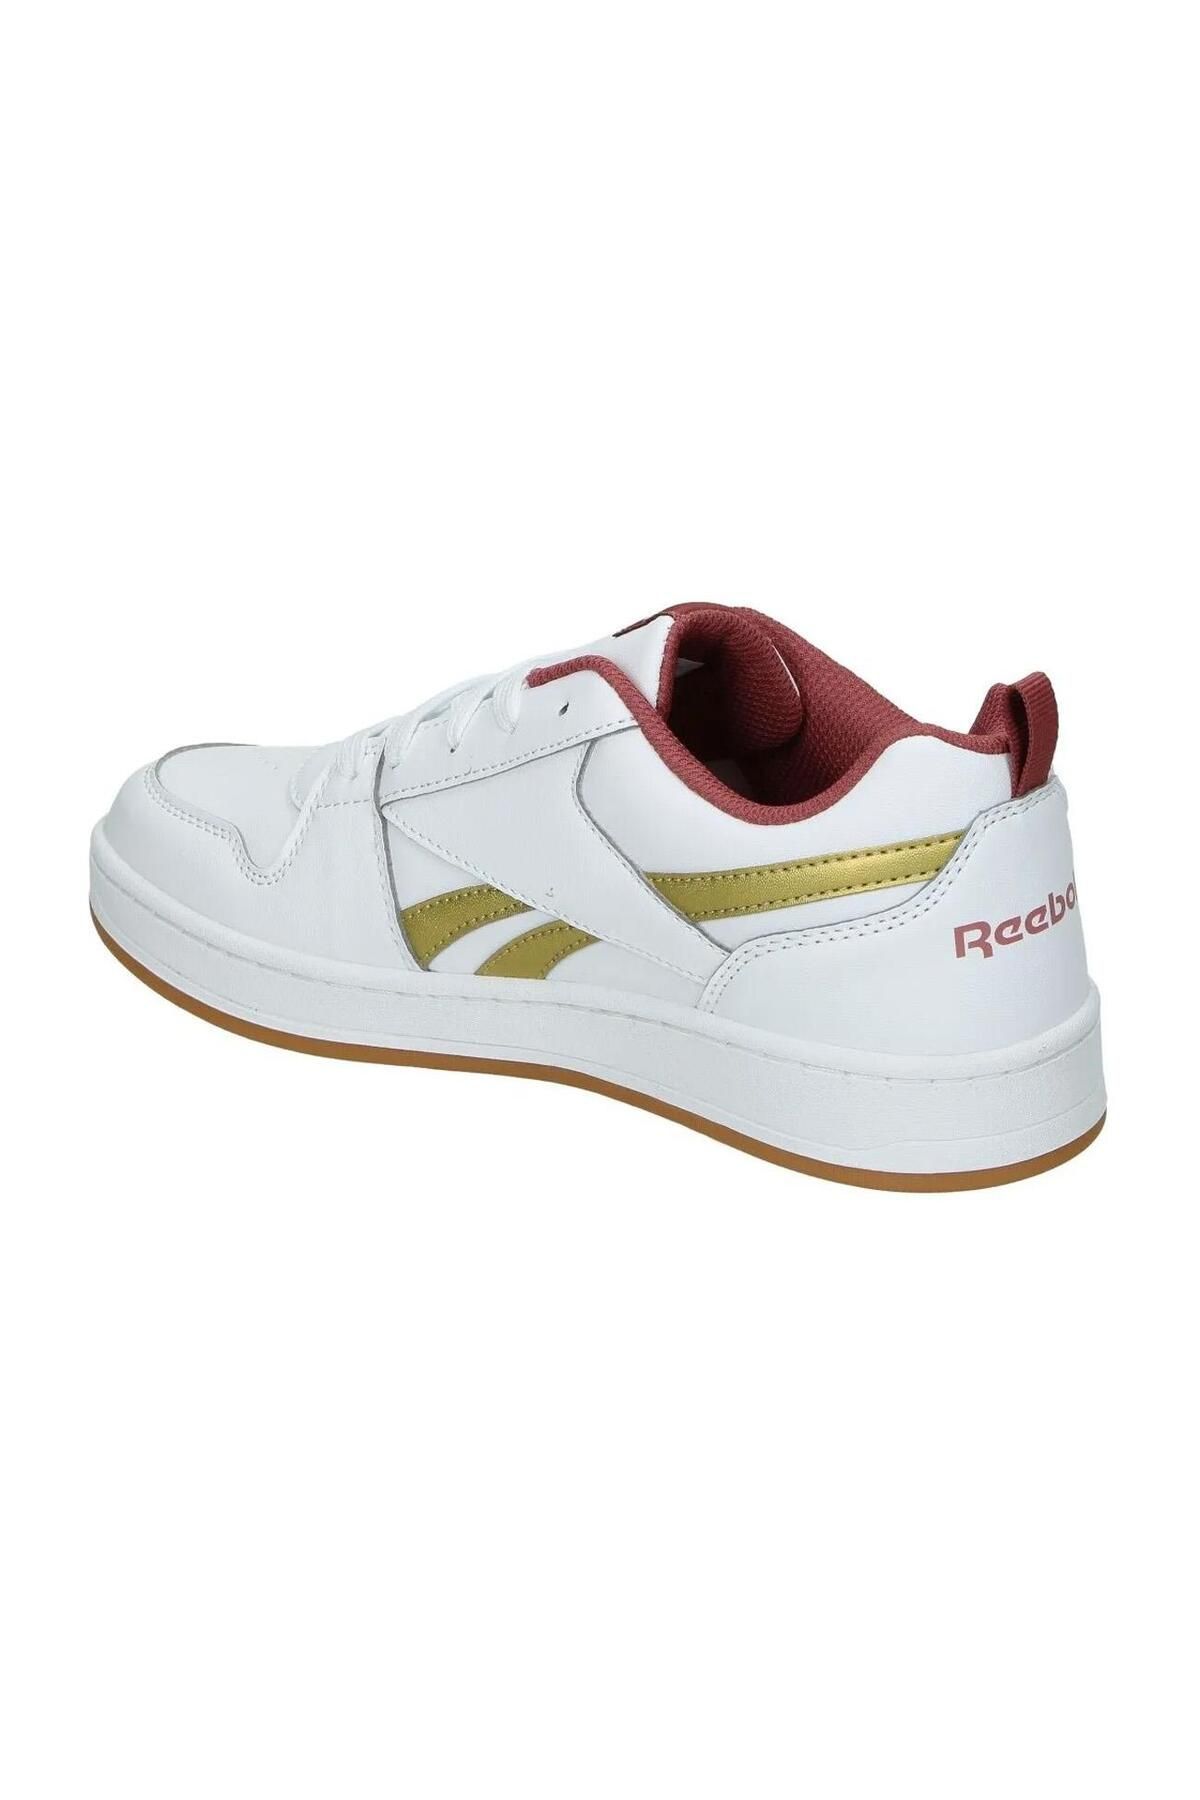 Reebok 100033493 Royal Prime Sport کفش سفید